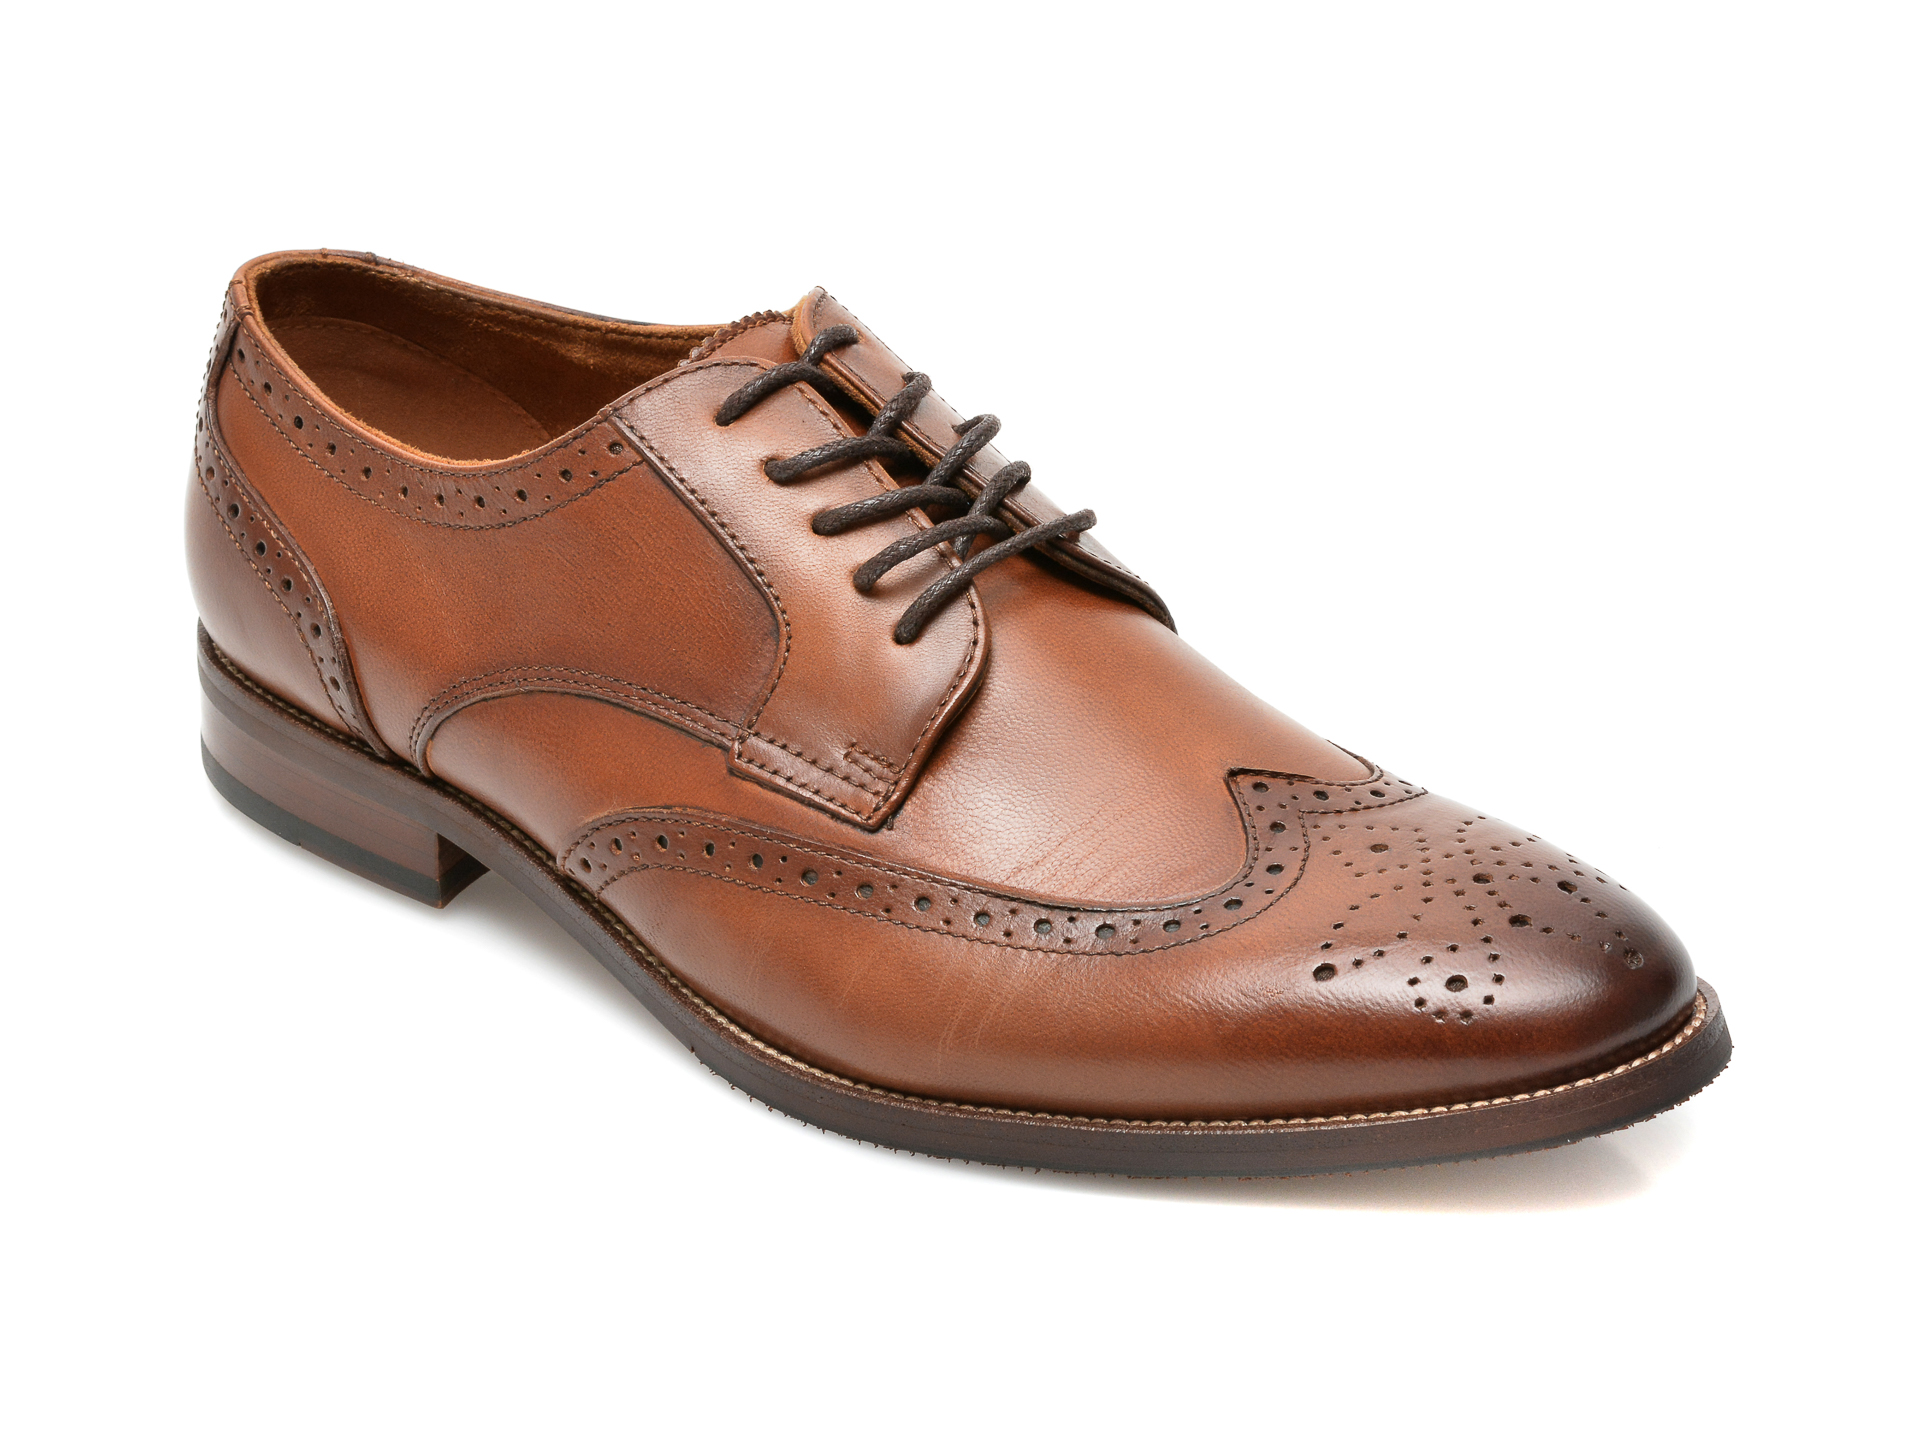 Pantofi ALDO maro, Larethienflex220, din piele naturala Aldo